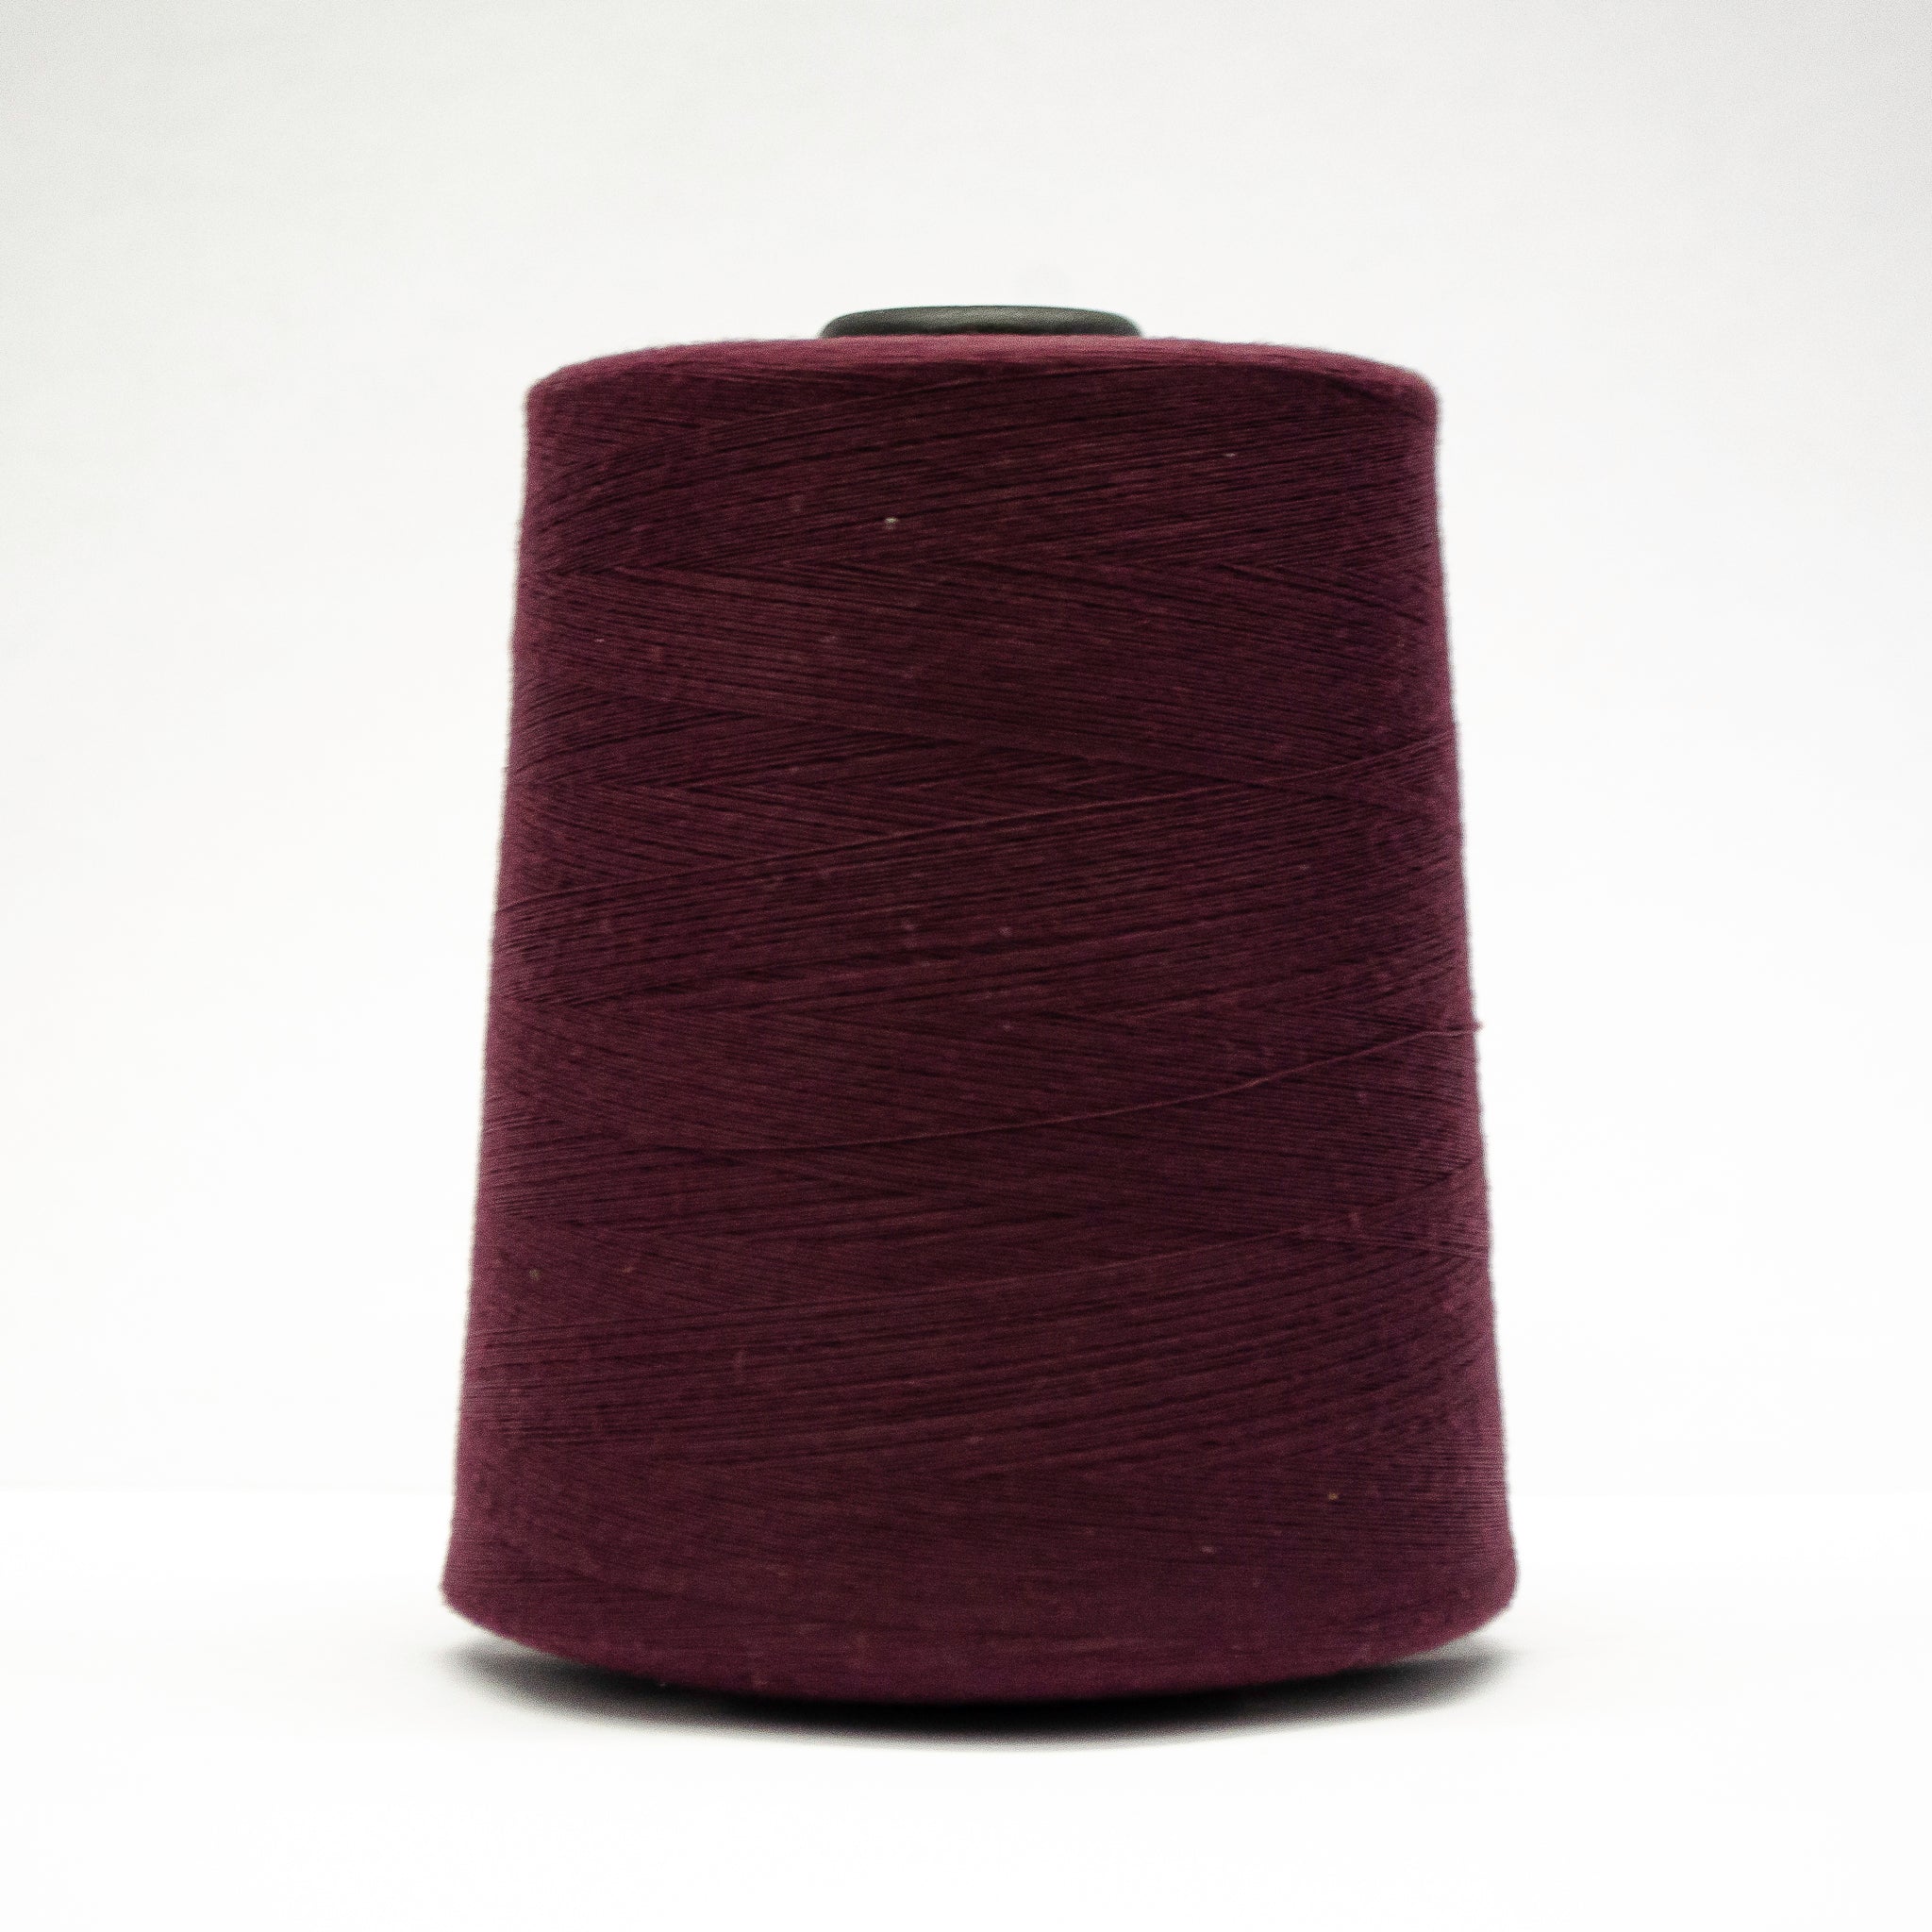 100% Polyester Tex 27 Sewing Thread 10,000 Yards-Burgundy #6746